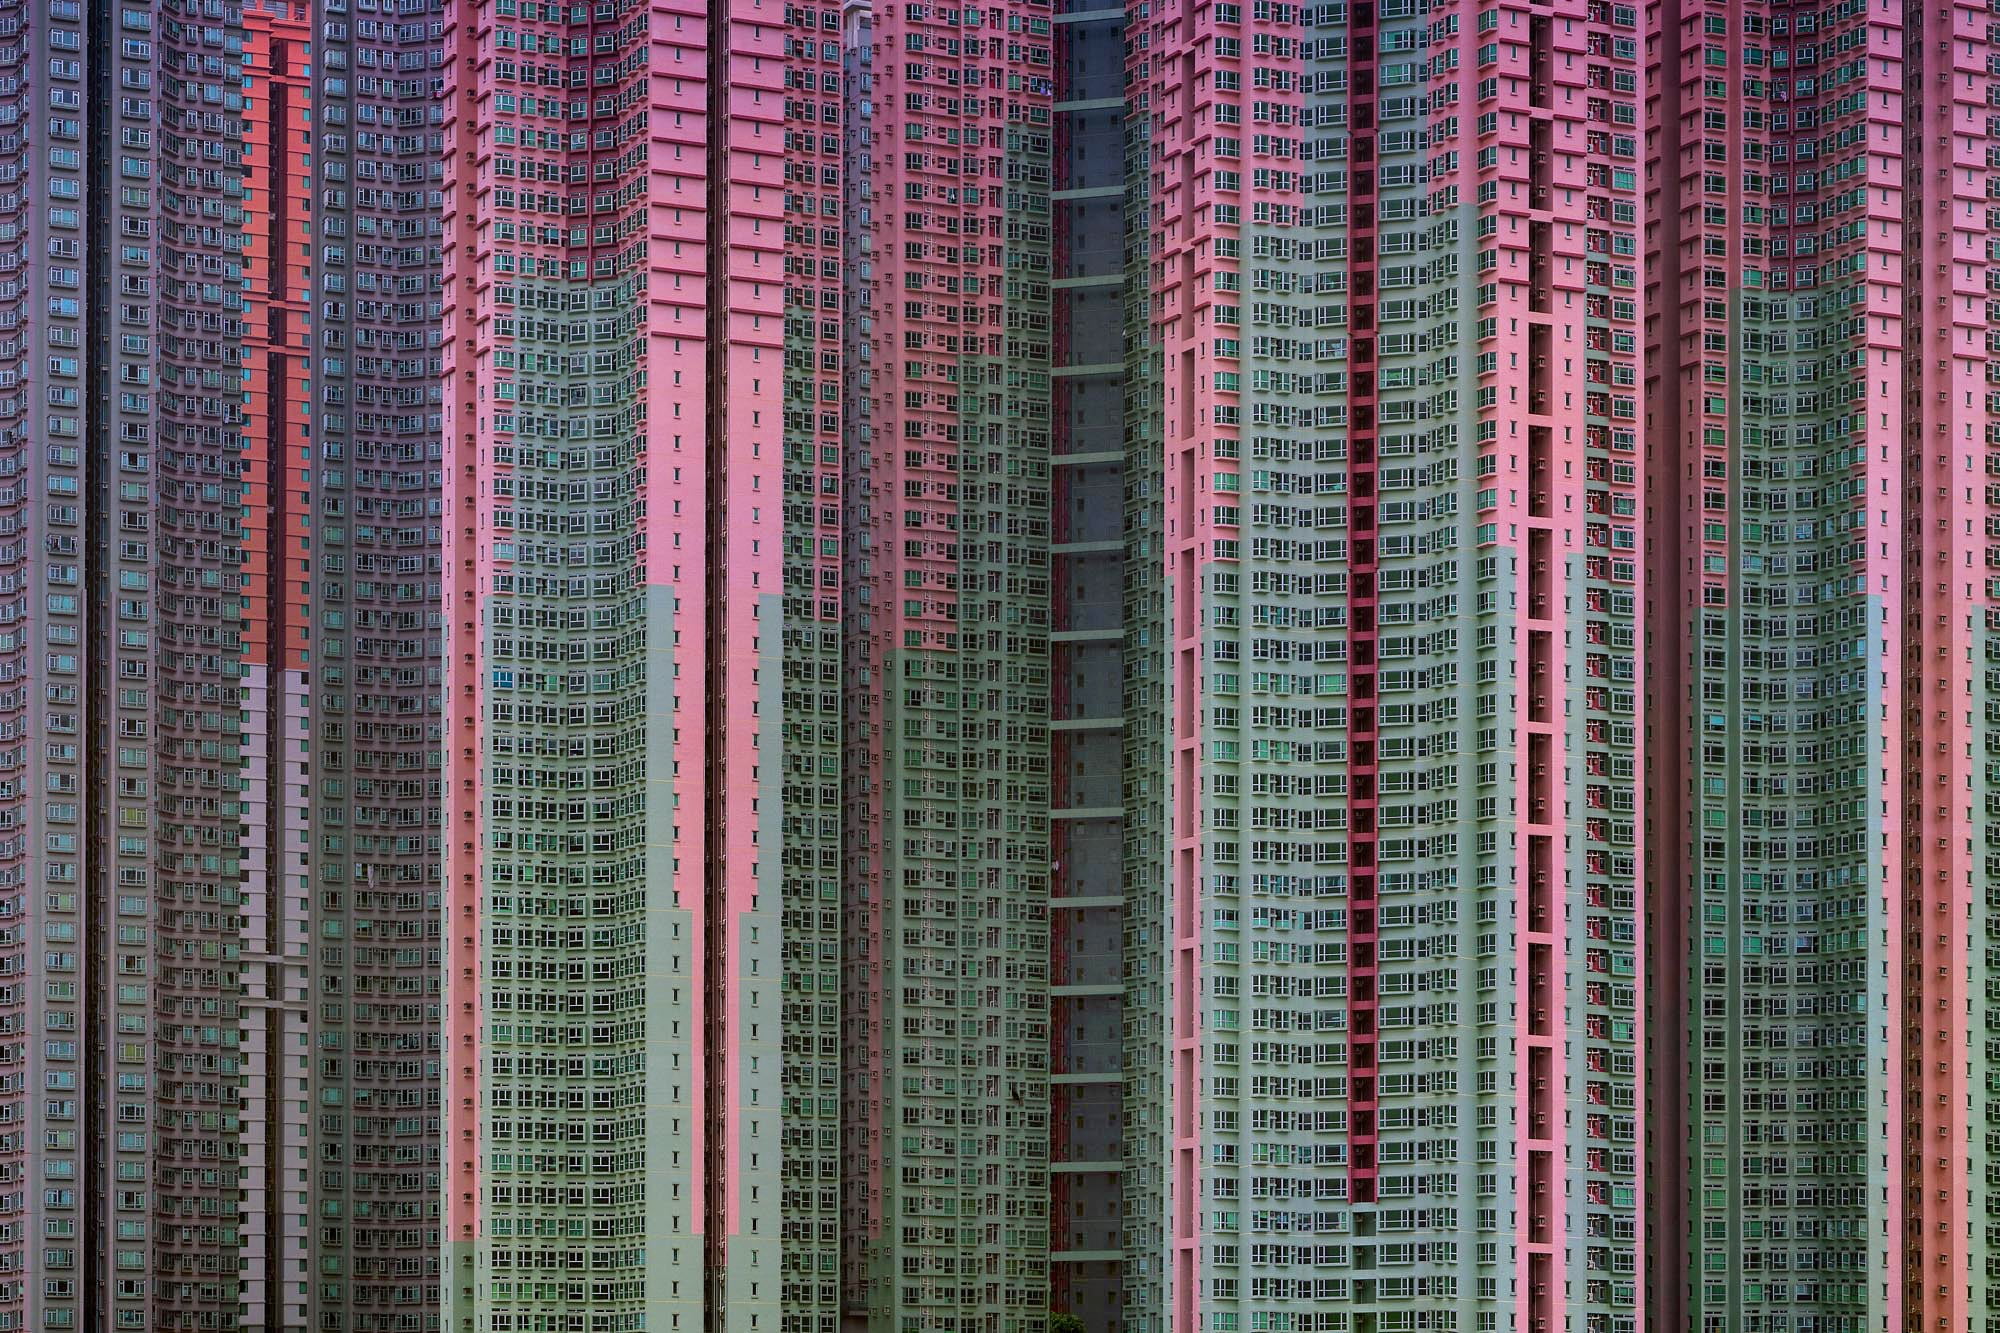 pink and teal artwork, skyscraper, Hong Kong